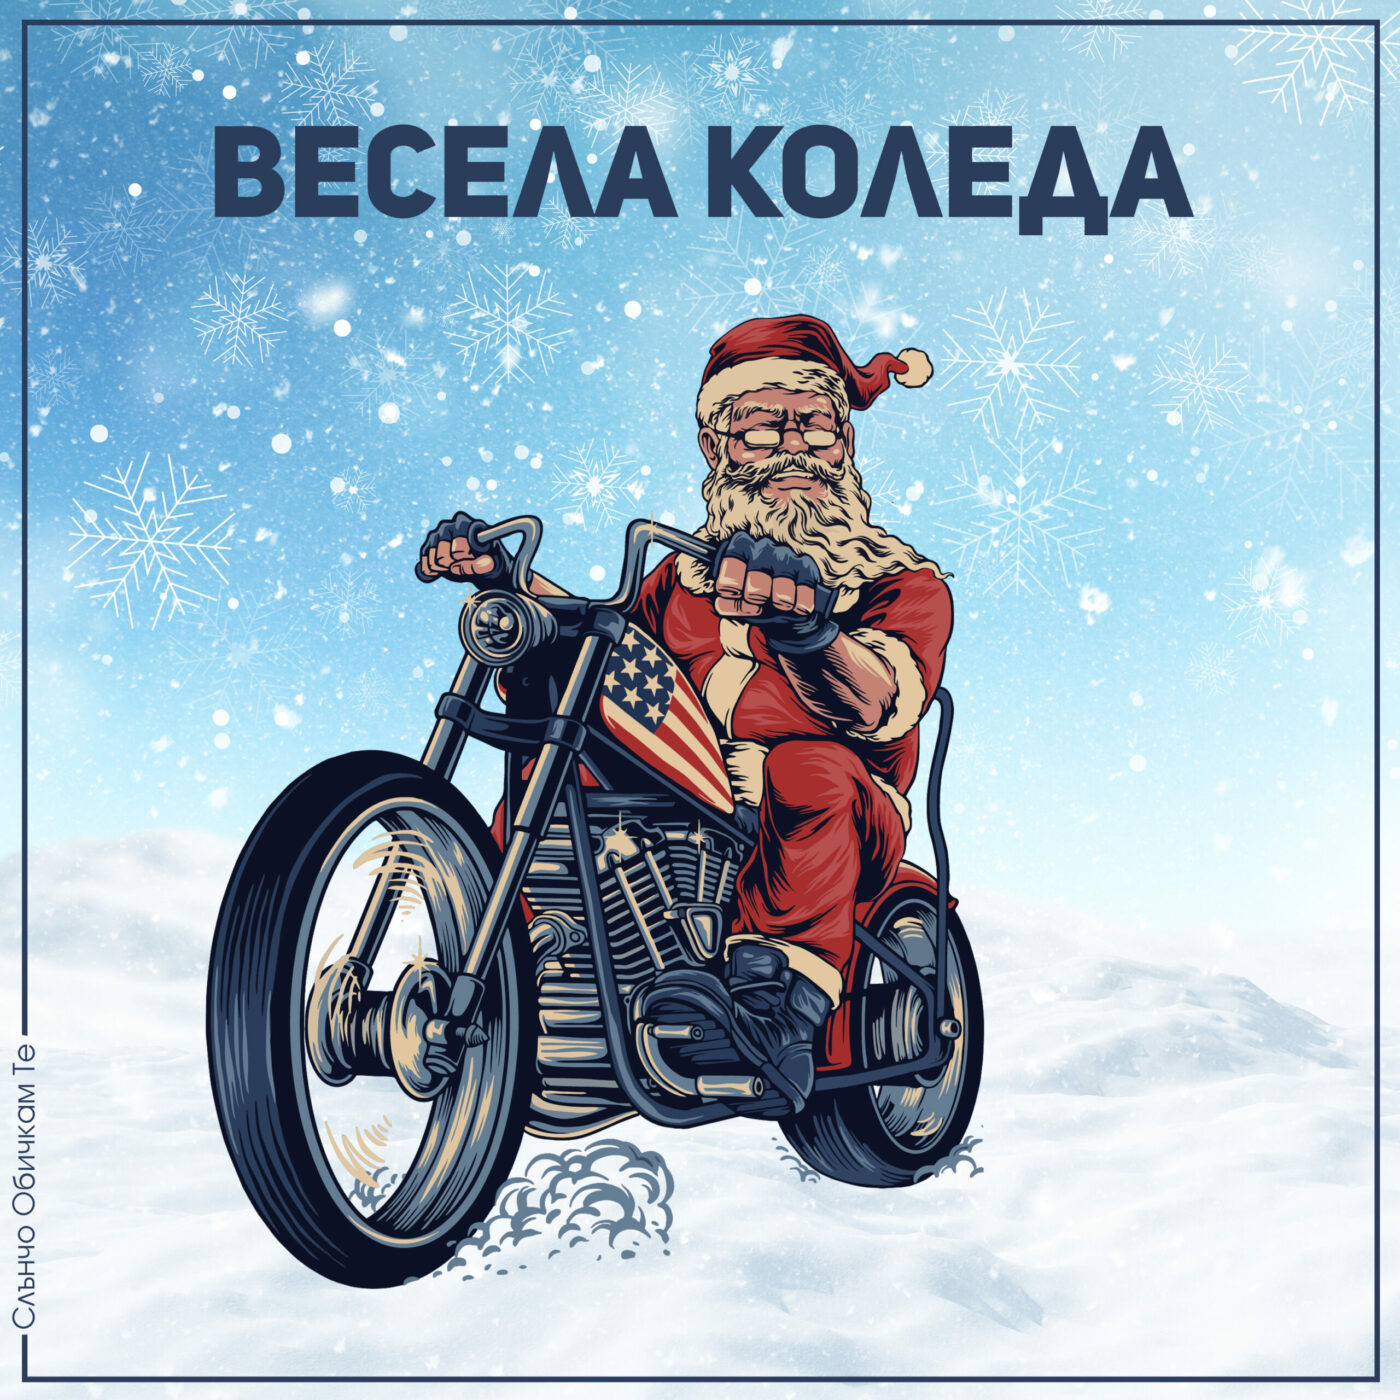 Весела коледа с рокер - Коледни картички 2022, картички за коледа за рокер мотоциклист, дядо коледа на мотор, дядо коледа с мотор